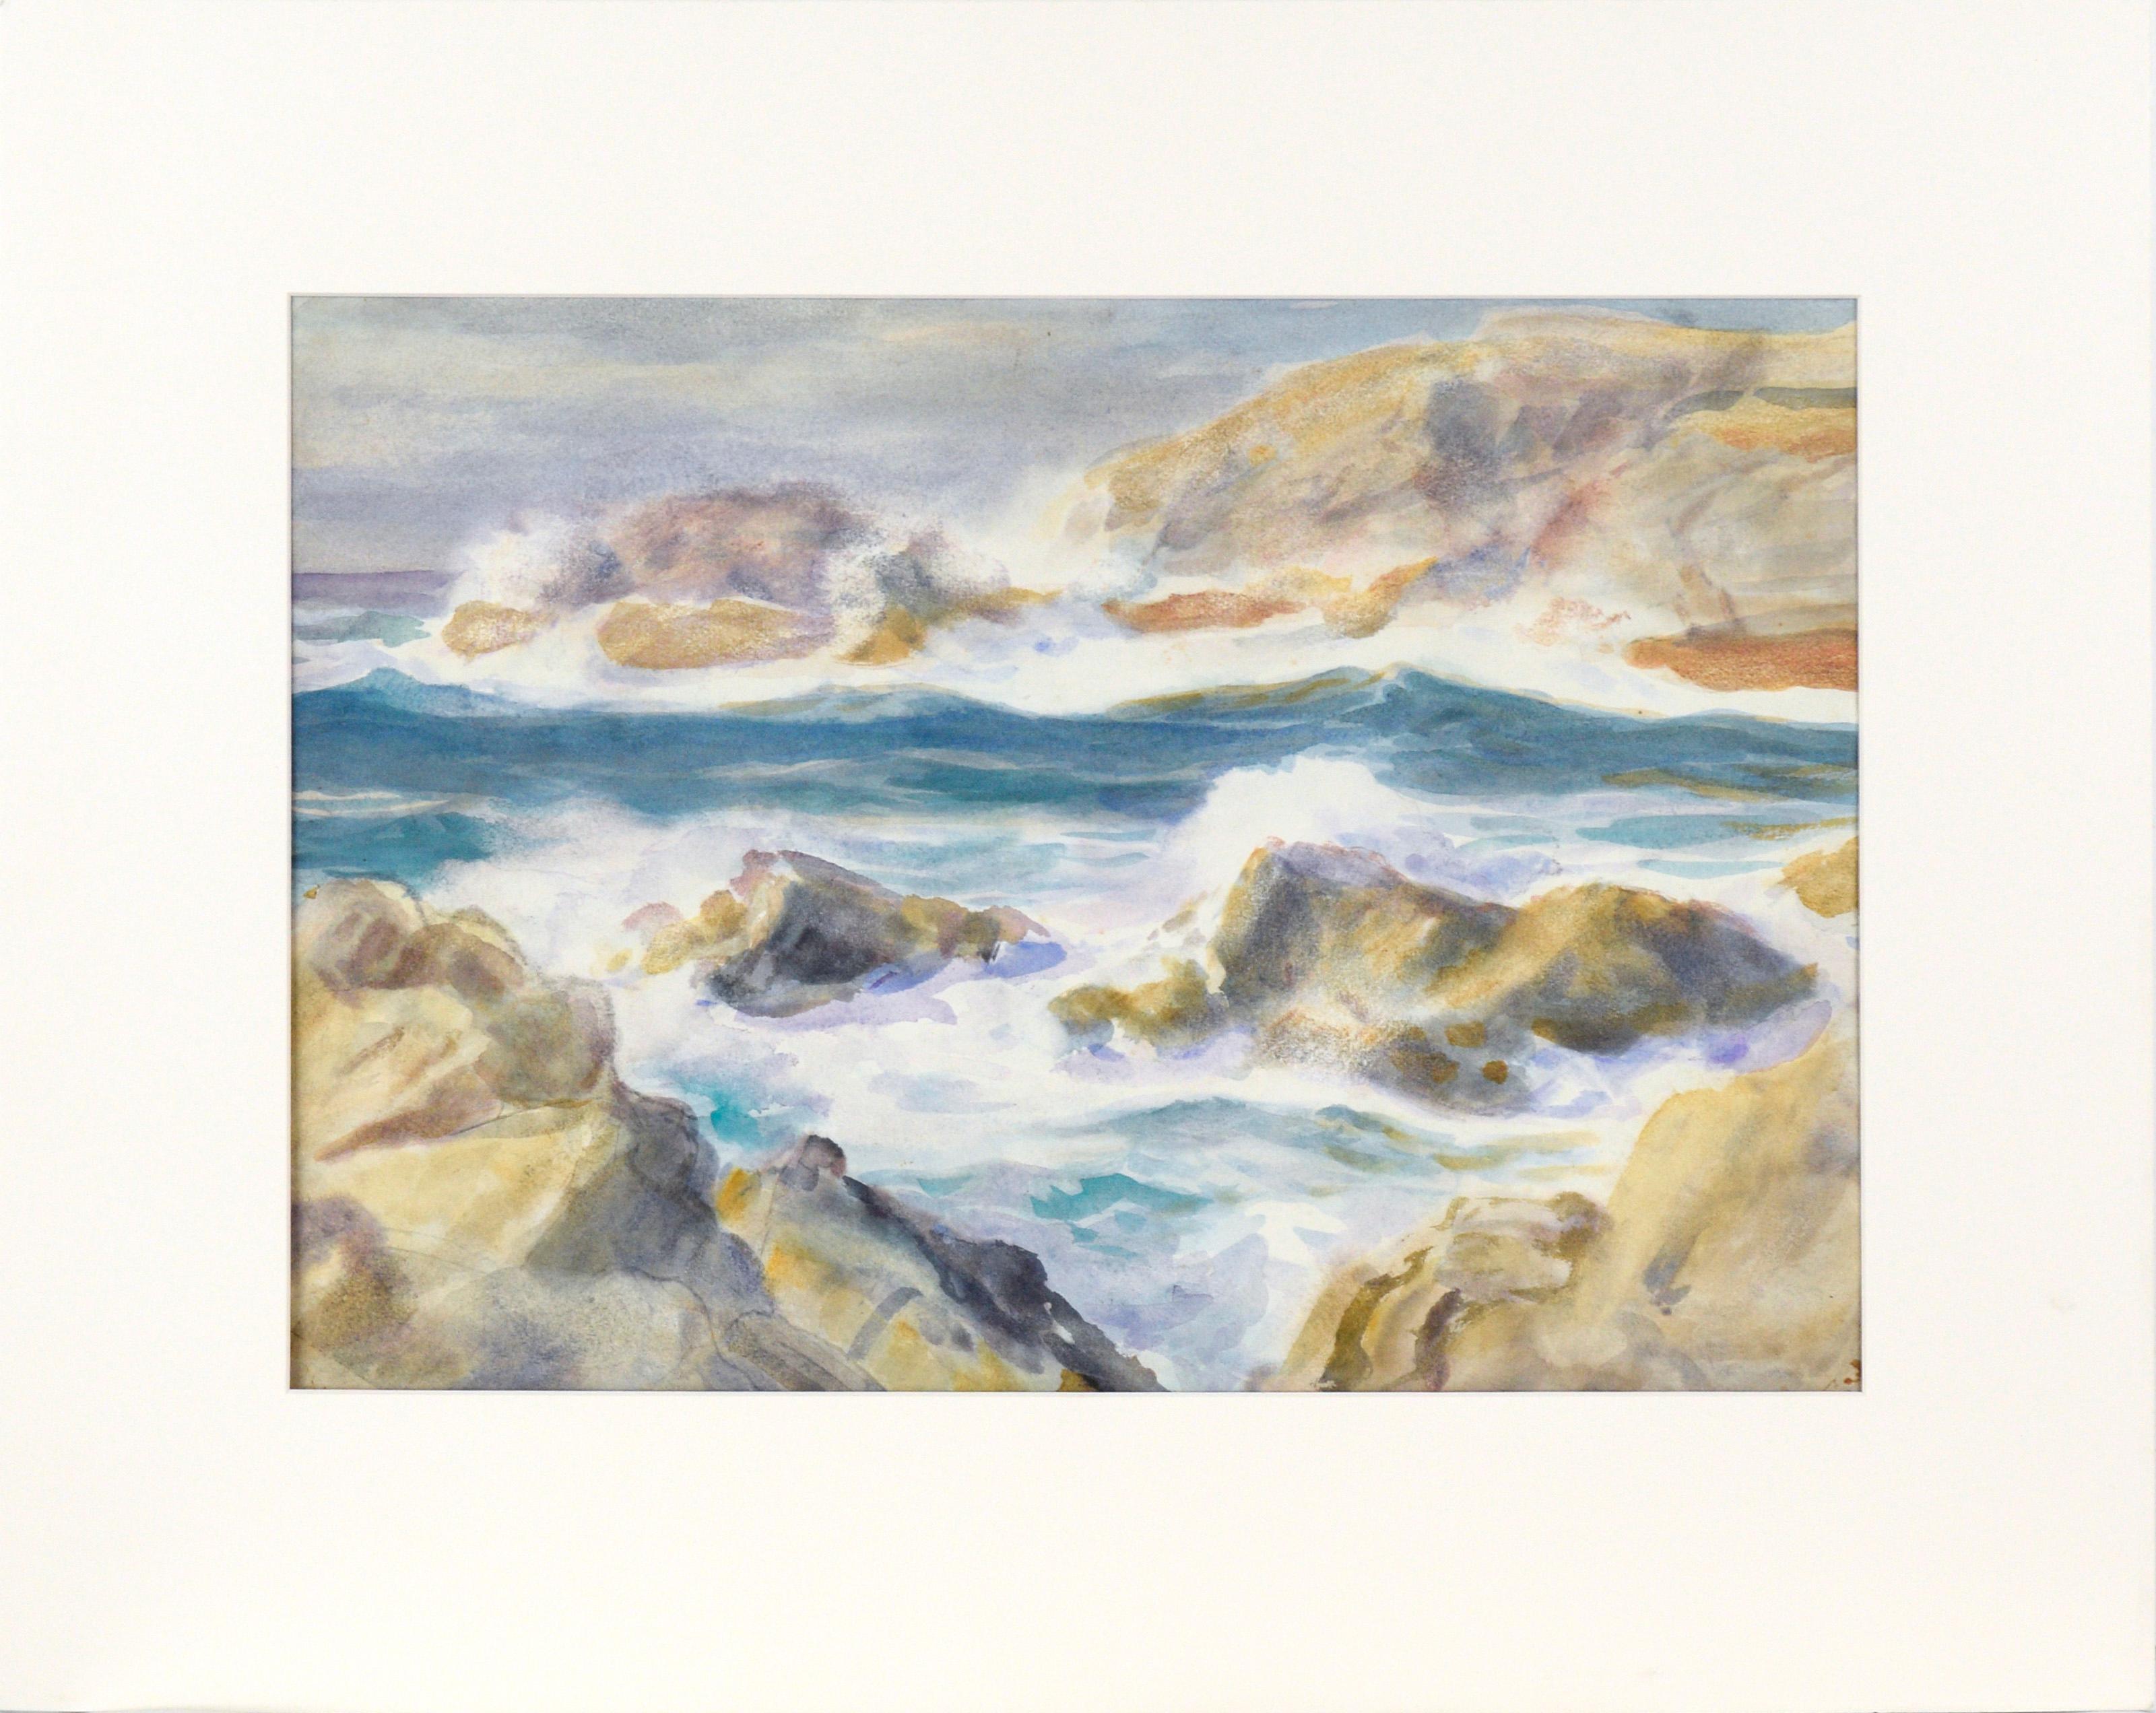 Paul Dougherty Landscape Art - Rocky California Seascape in Watercolor on Paper